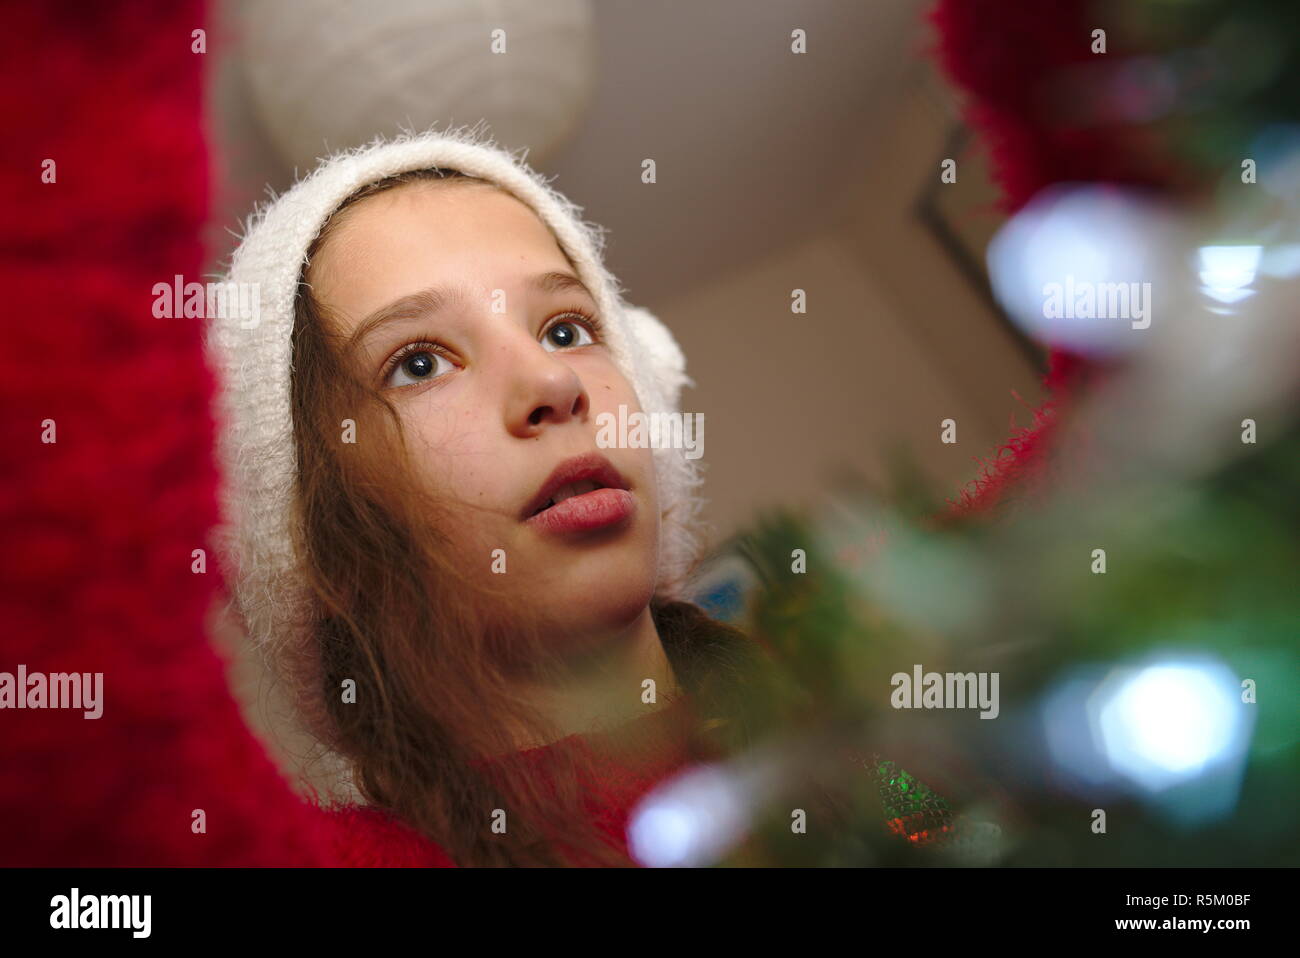 Glückliches Kind schmücken Weihnachtsbaum. Stockfoto